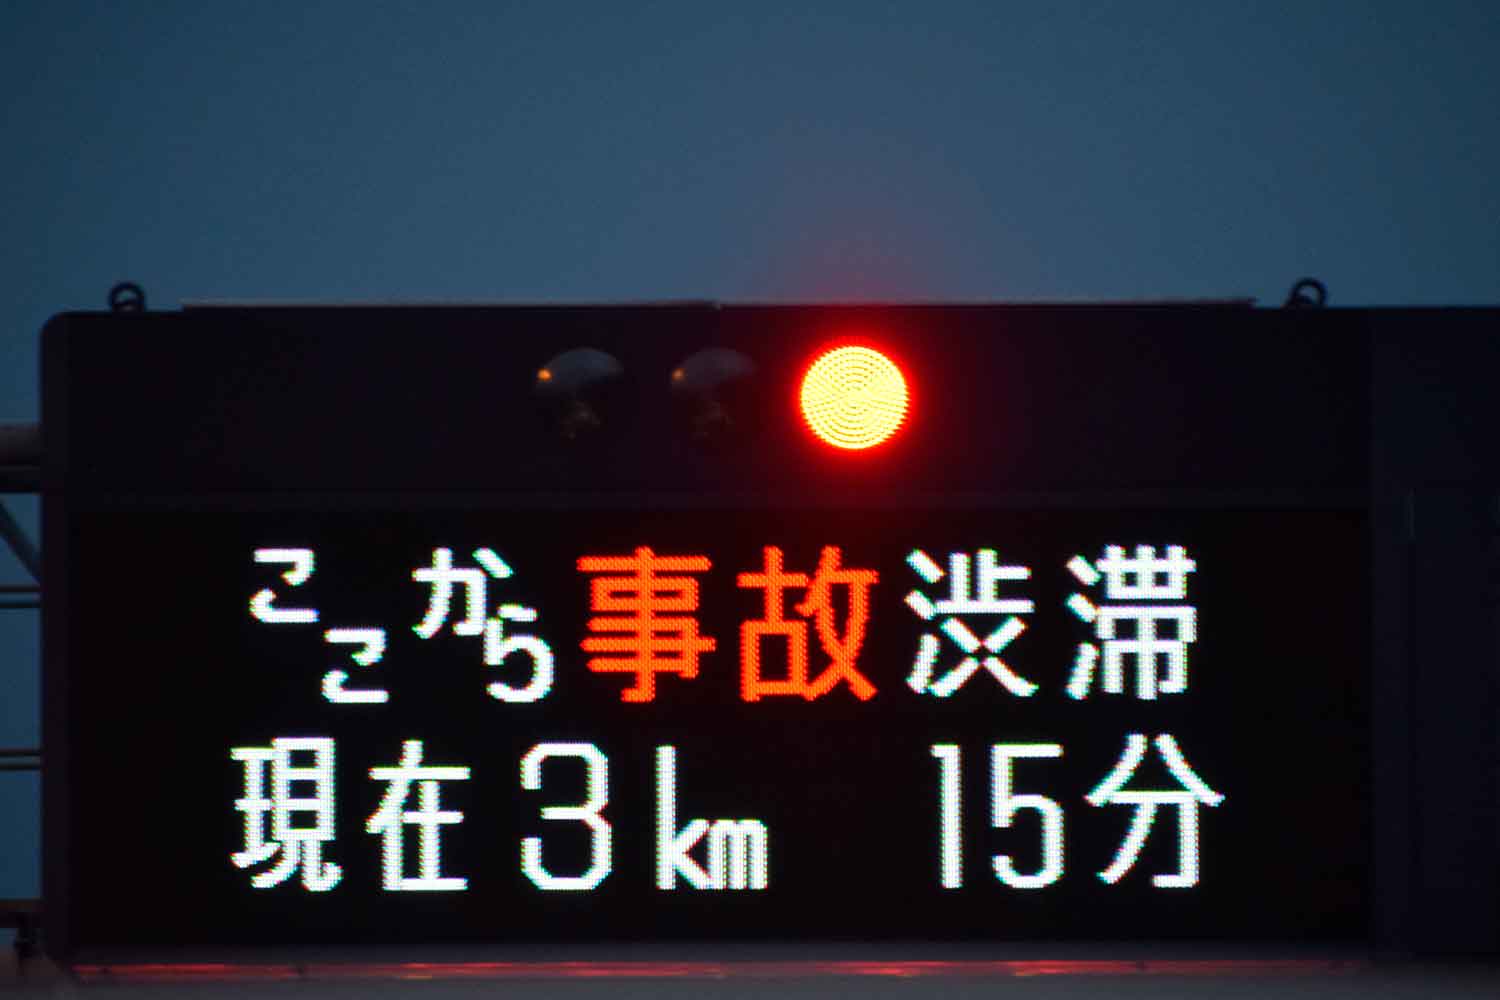 渋滞情報を表示している高速道路の電光掲示板